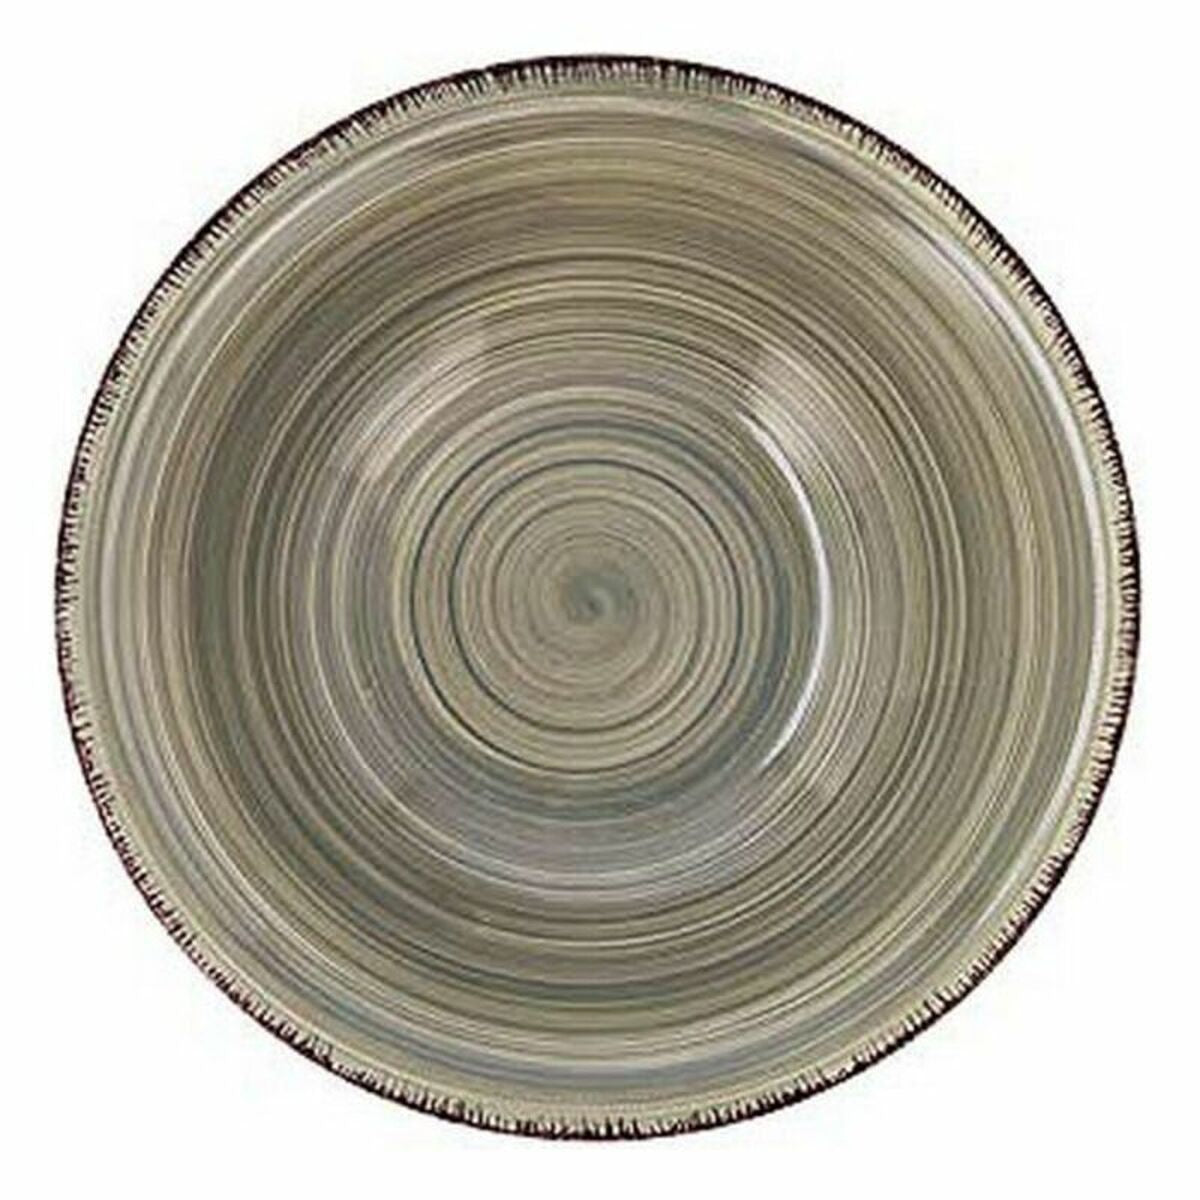 Bowl Quid Vita Green Ceramic 6 Pieces (6 pcs)